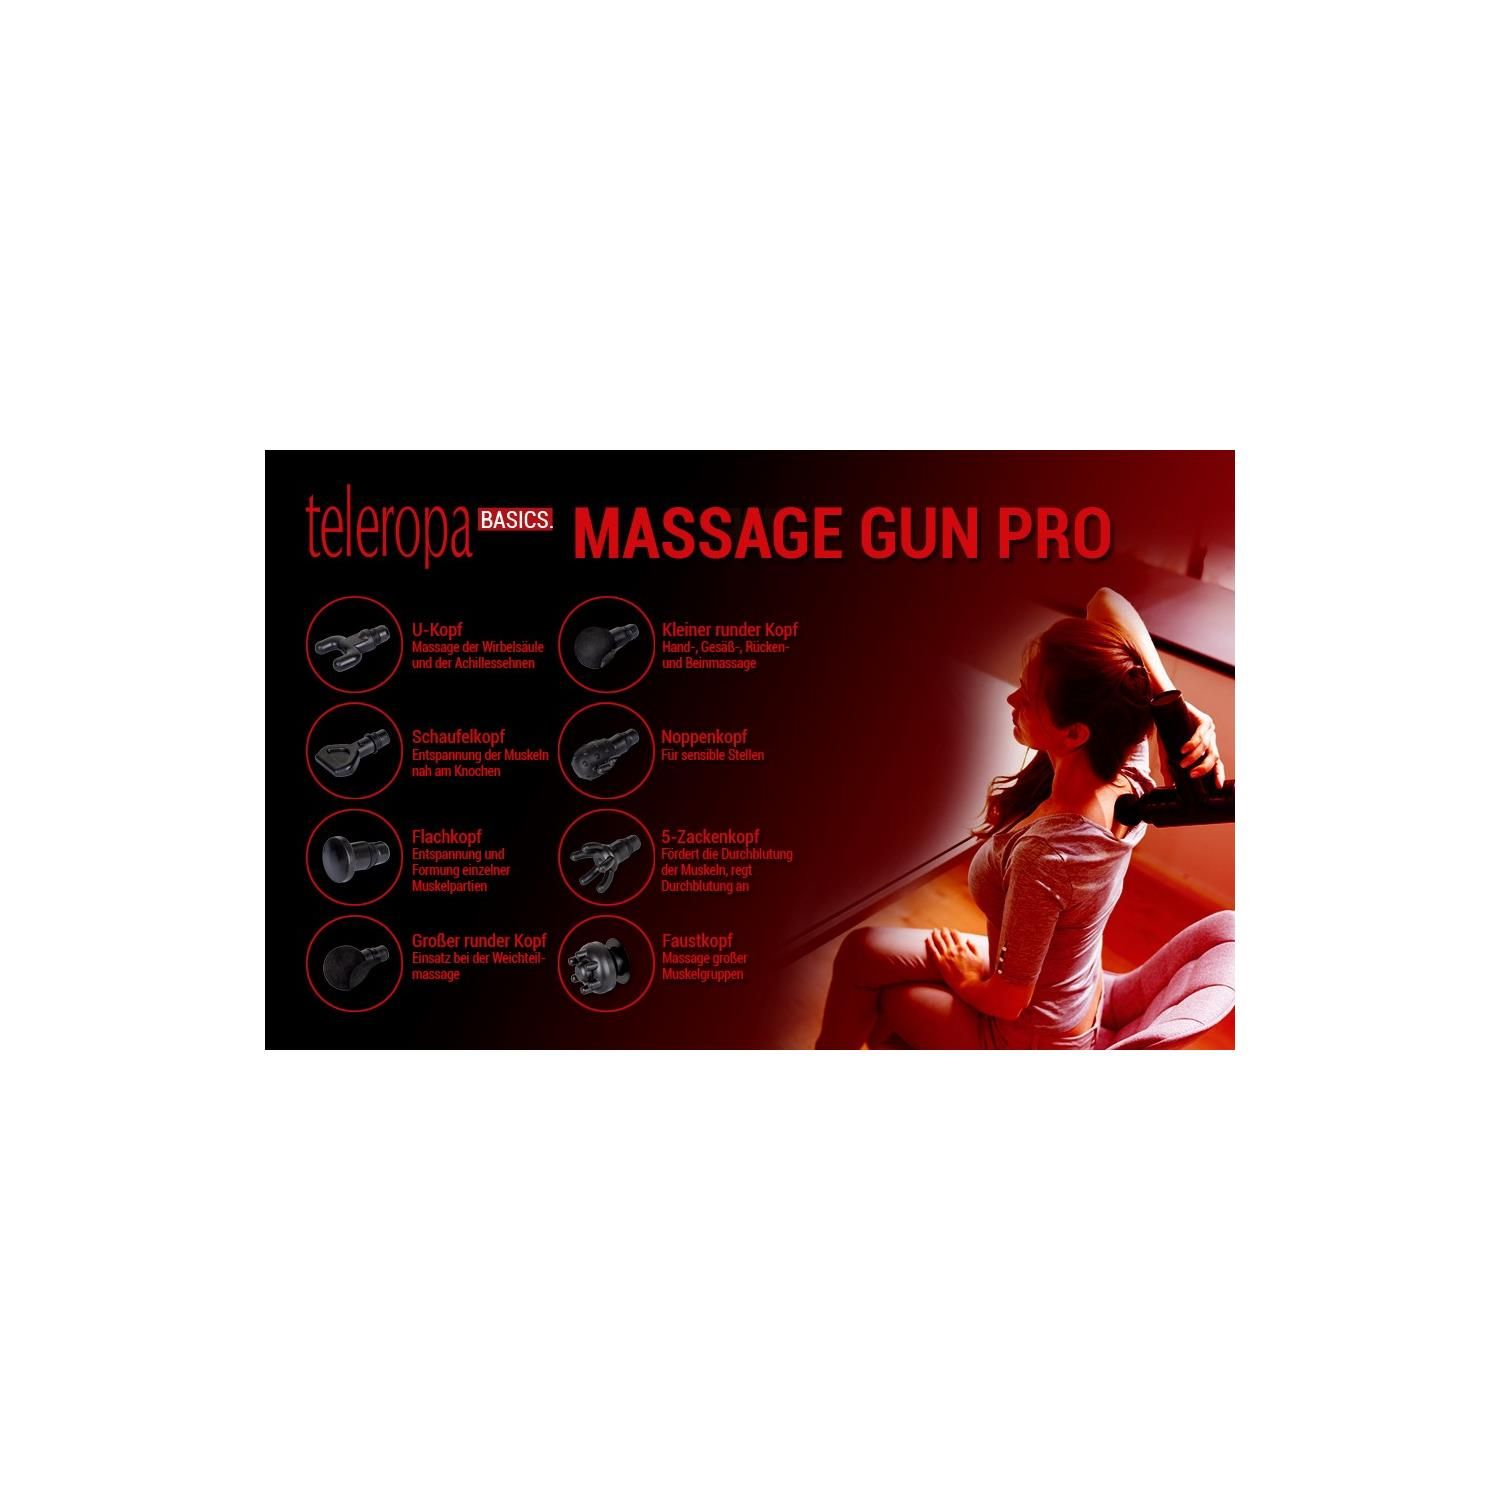 TELEROPA BASICS Massage-Pistole Gun Massage Pro